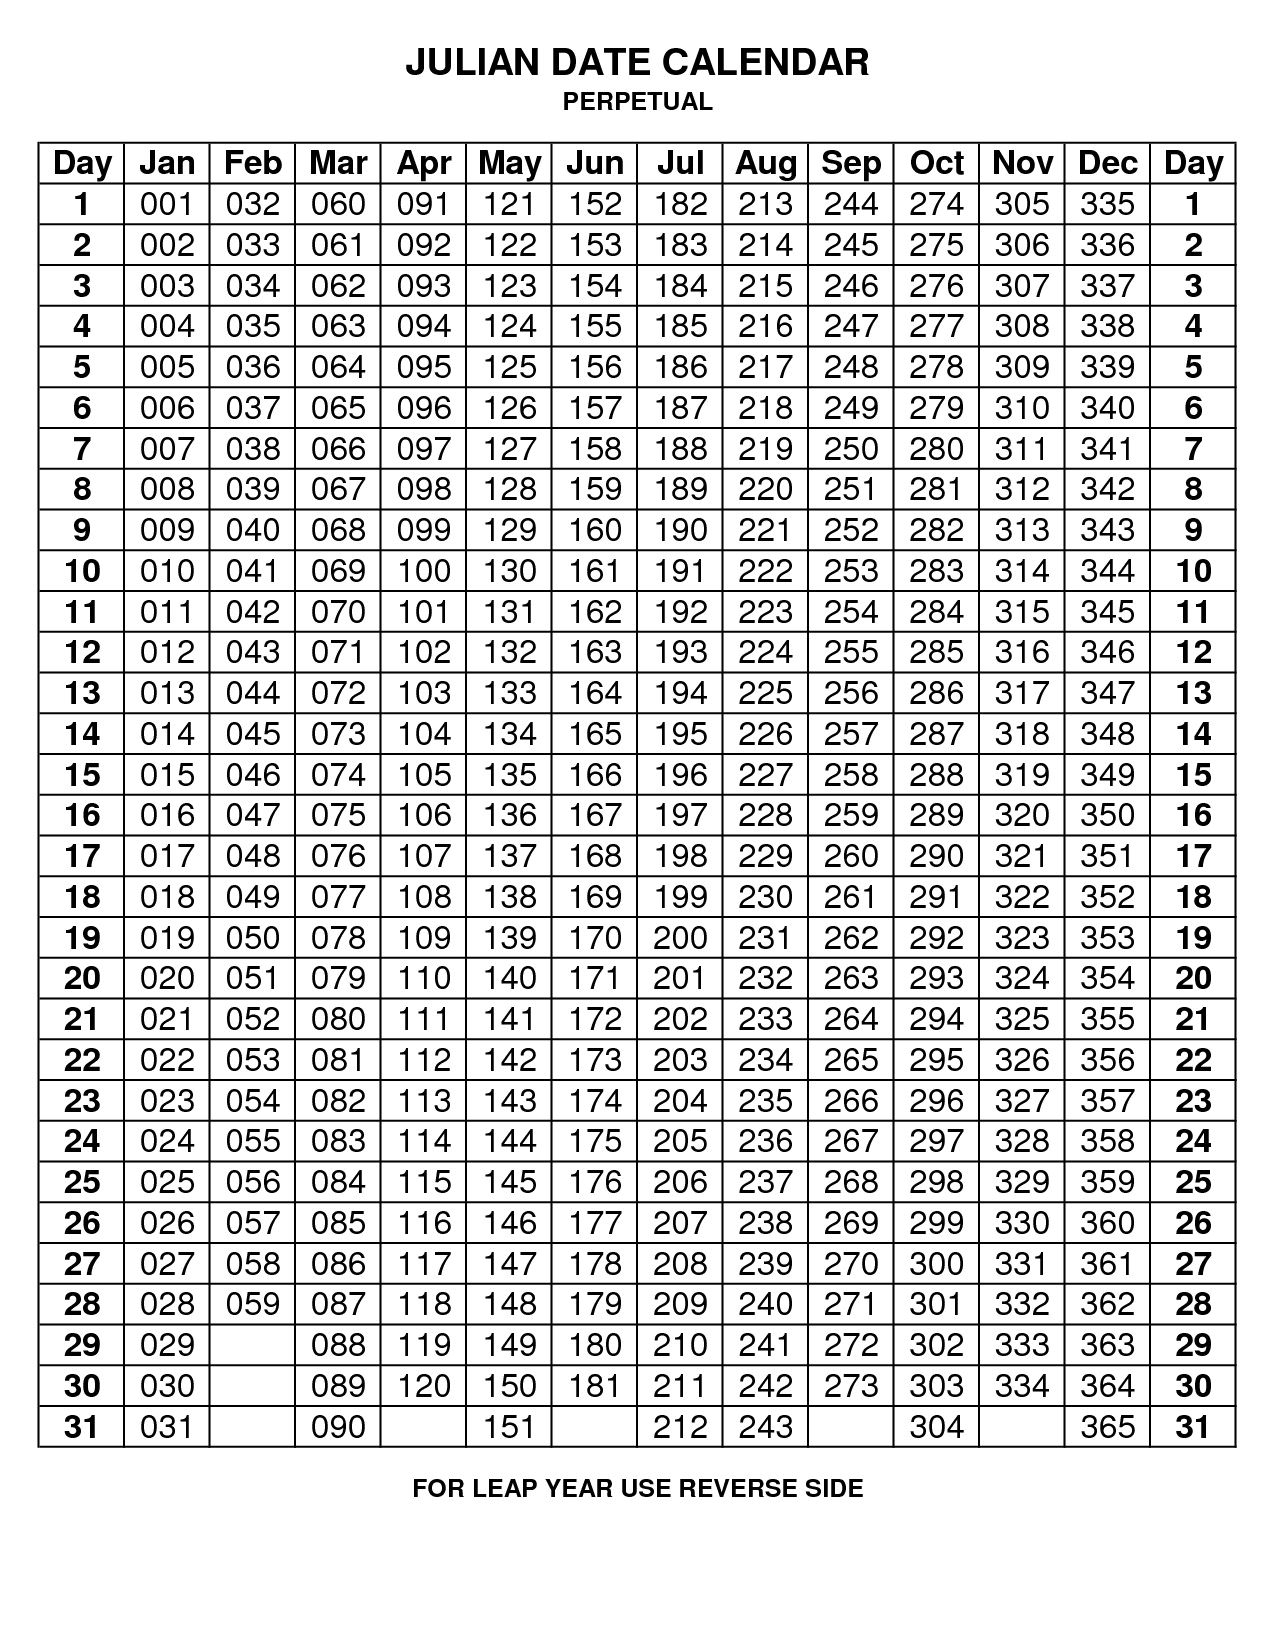 Print Calendar From Date To Date In 2020 | Julian Dates